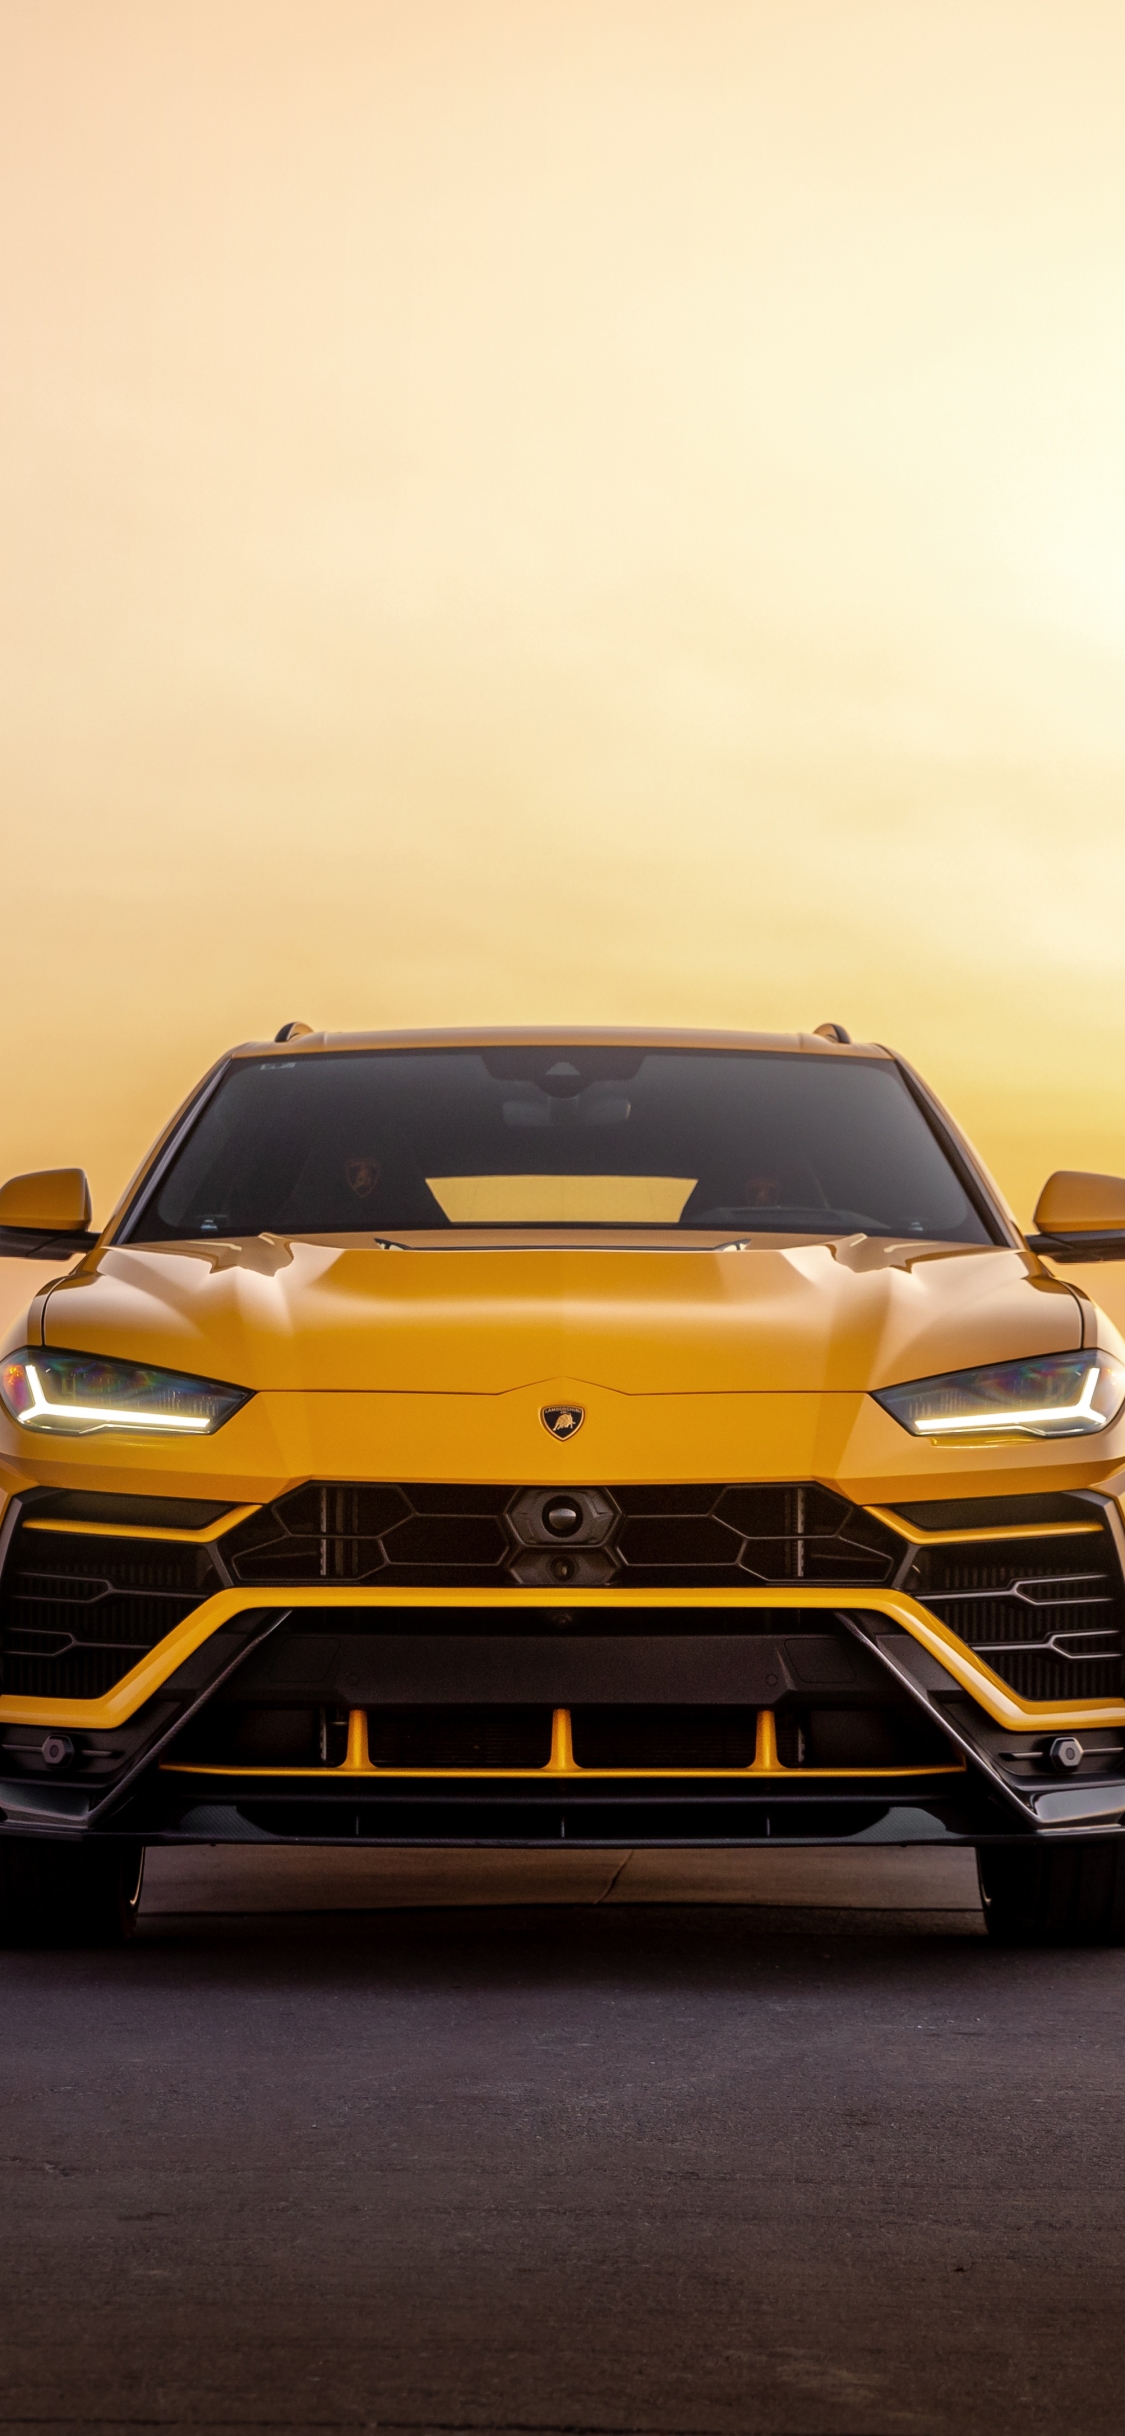 Descarga gratuita de fondo de pantalla para móvil de Lamborghini, Coche, Todoterreno, Vehículo, Lamborghini Urus, Vehículos, Coche Amarillo.